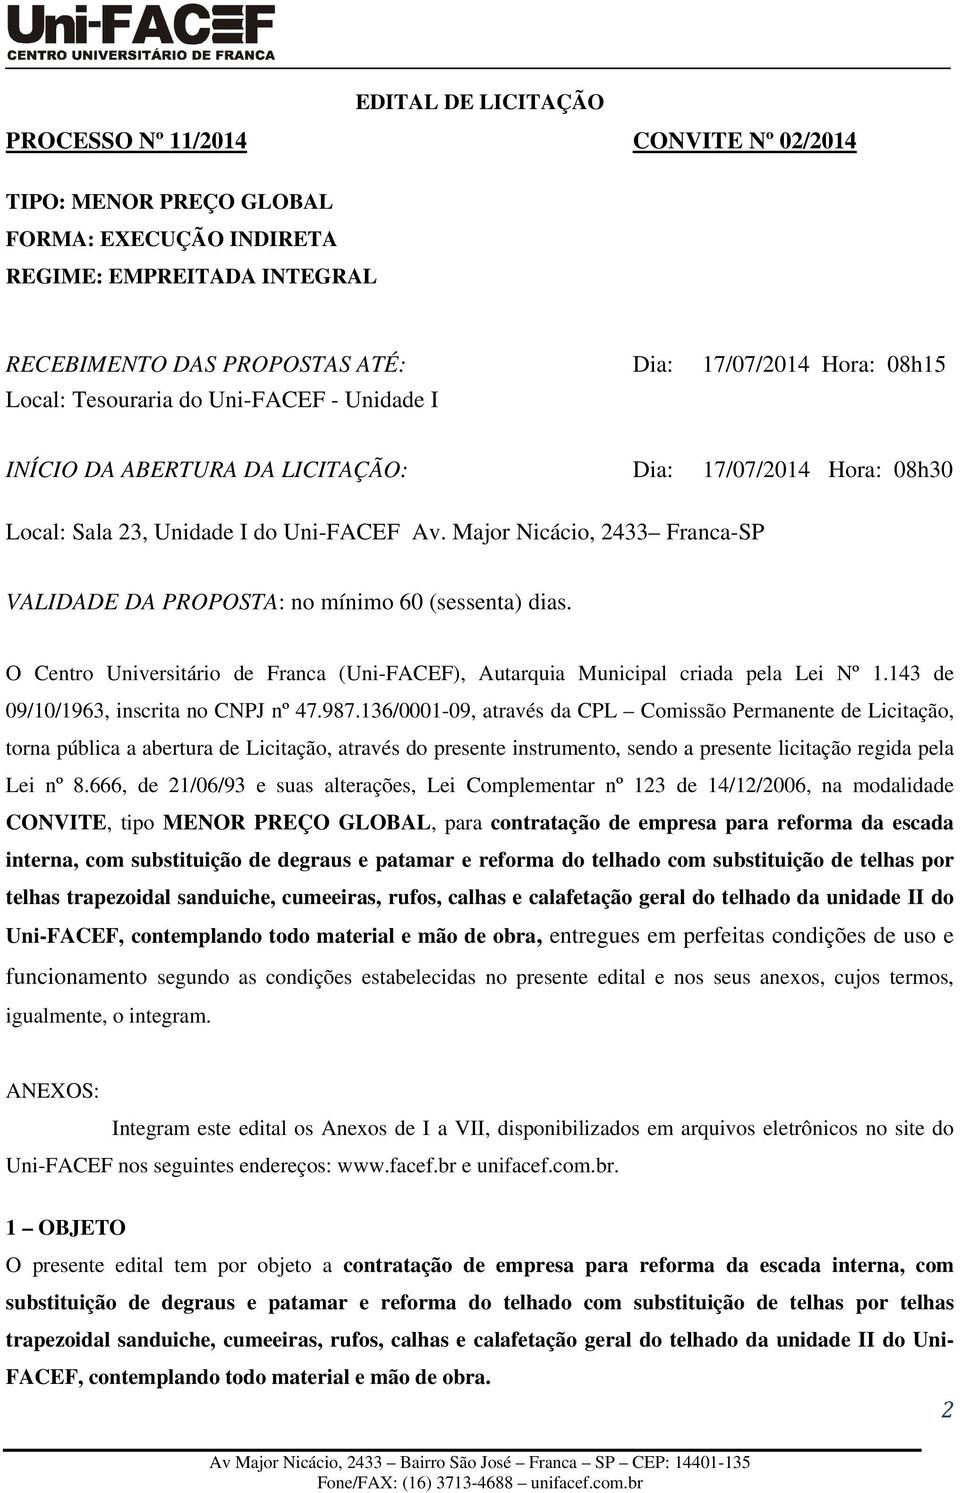 Major Nicácio, 2433 Franca-SP VALIDADE DA PROPOSTA: no mínimo 60 (sessenta) dias. O Centro Universitário de Franca (Uni-FACEF), Autarquia Municipal criada pela Lei Nº 1.